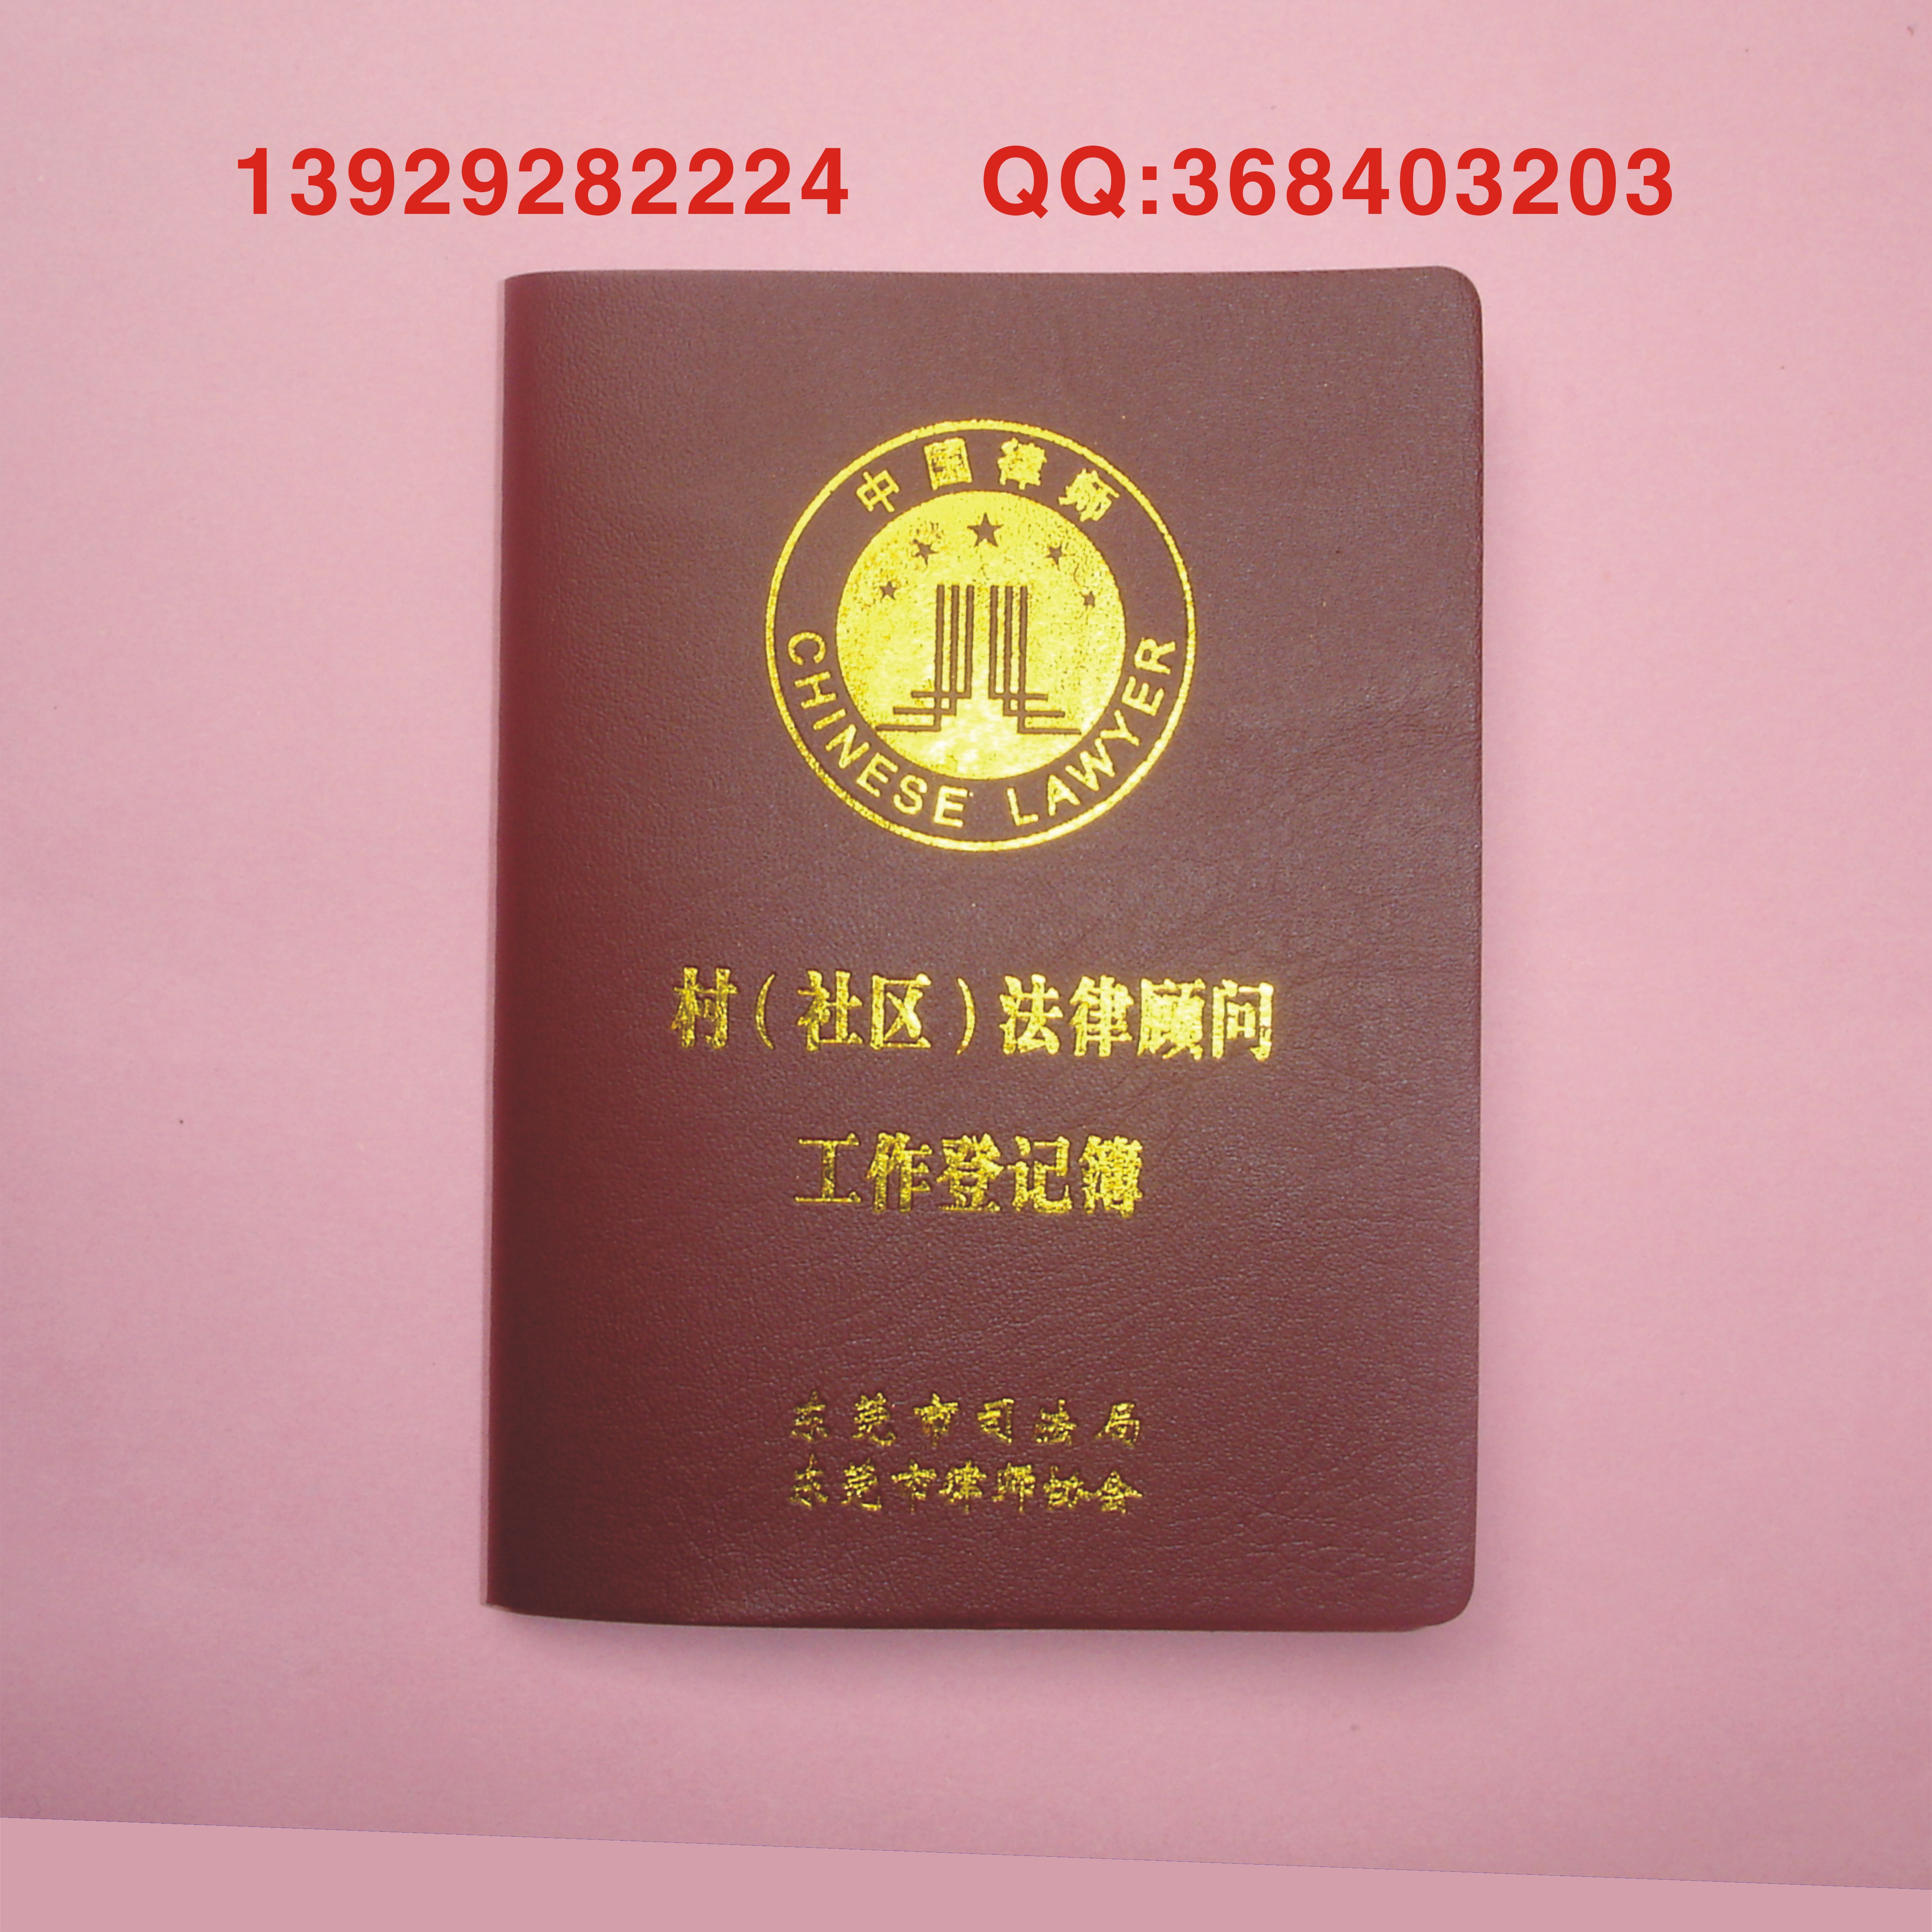 最新版中国红十字会员证厂家订做 新版磨沙封面红十字会员证厂家订做 红十字会员证磨沙封面厂家订做